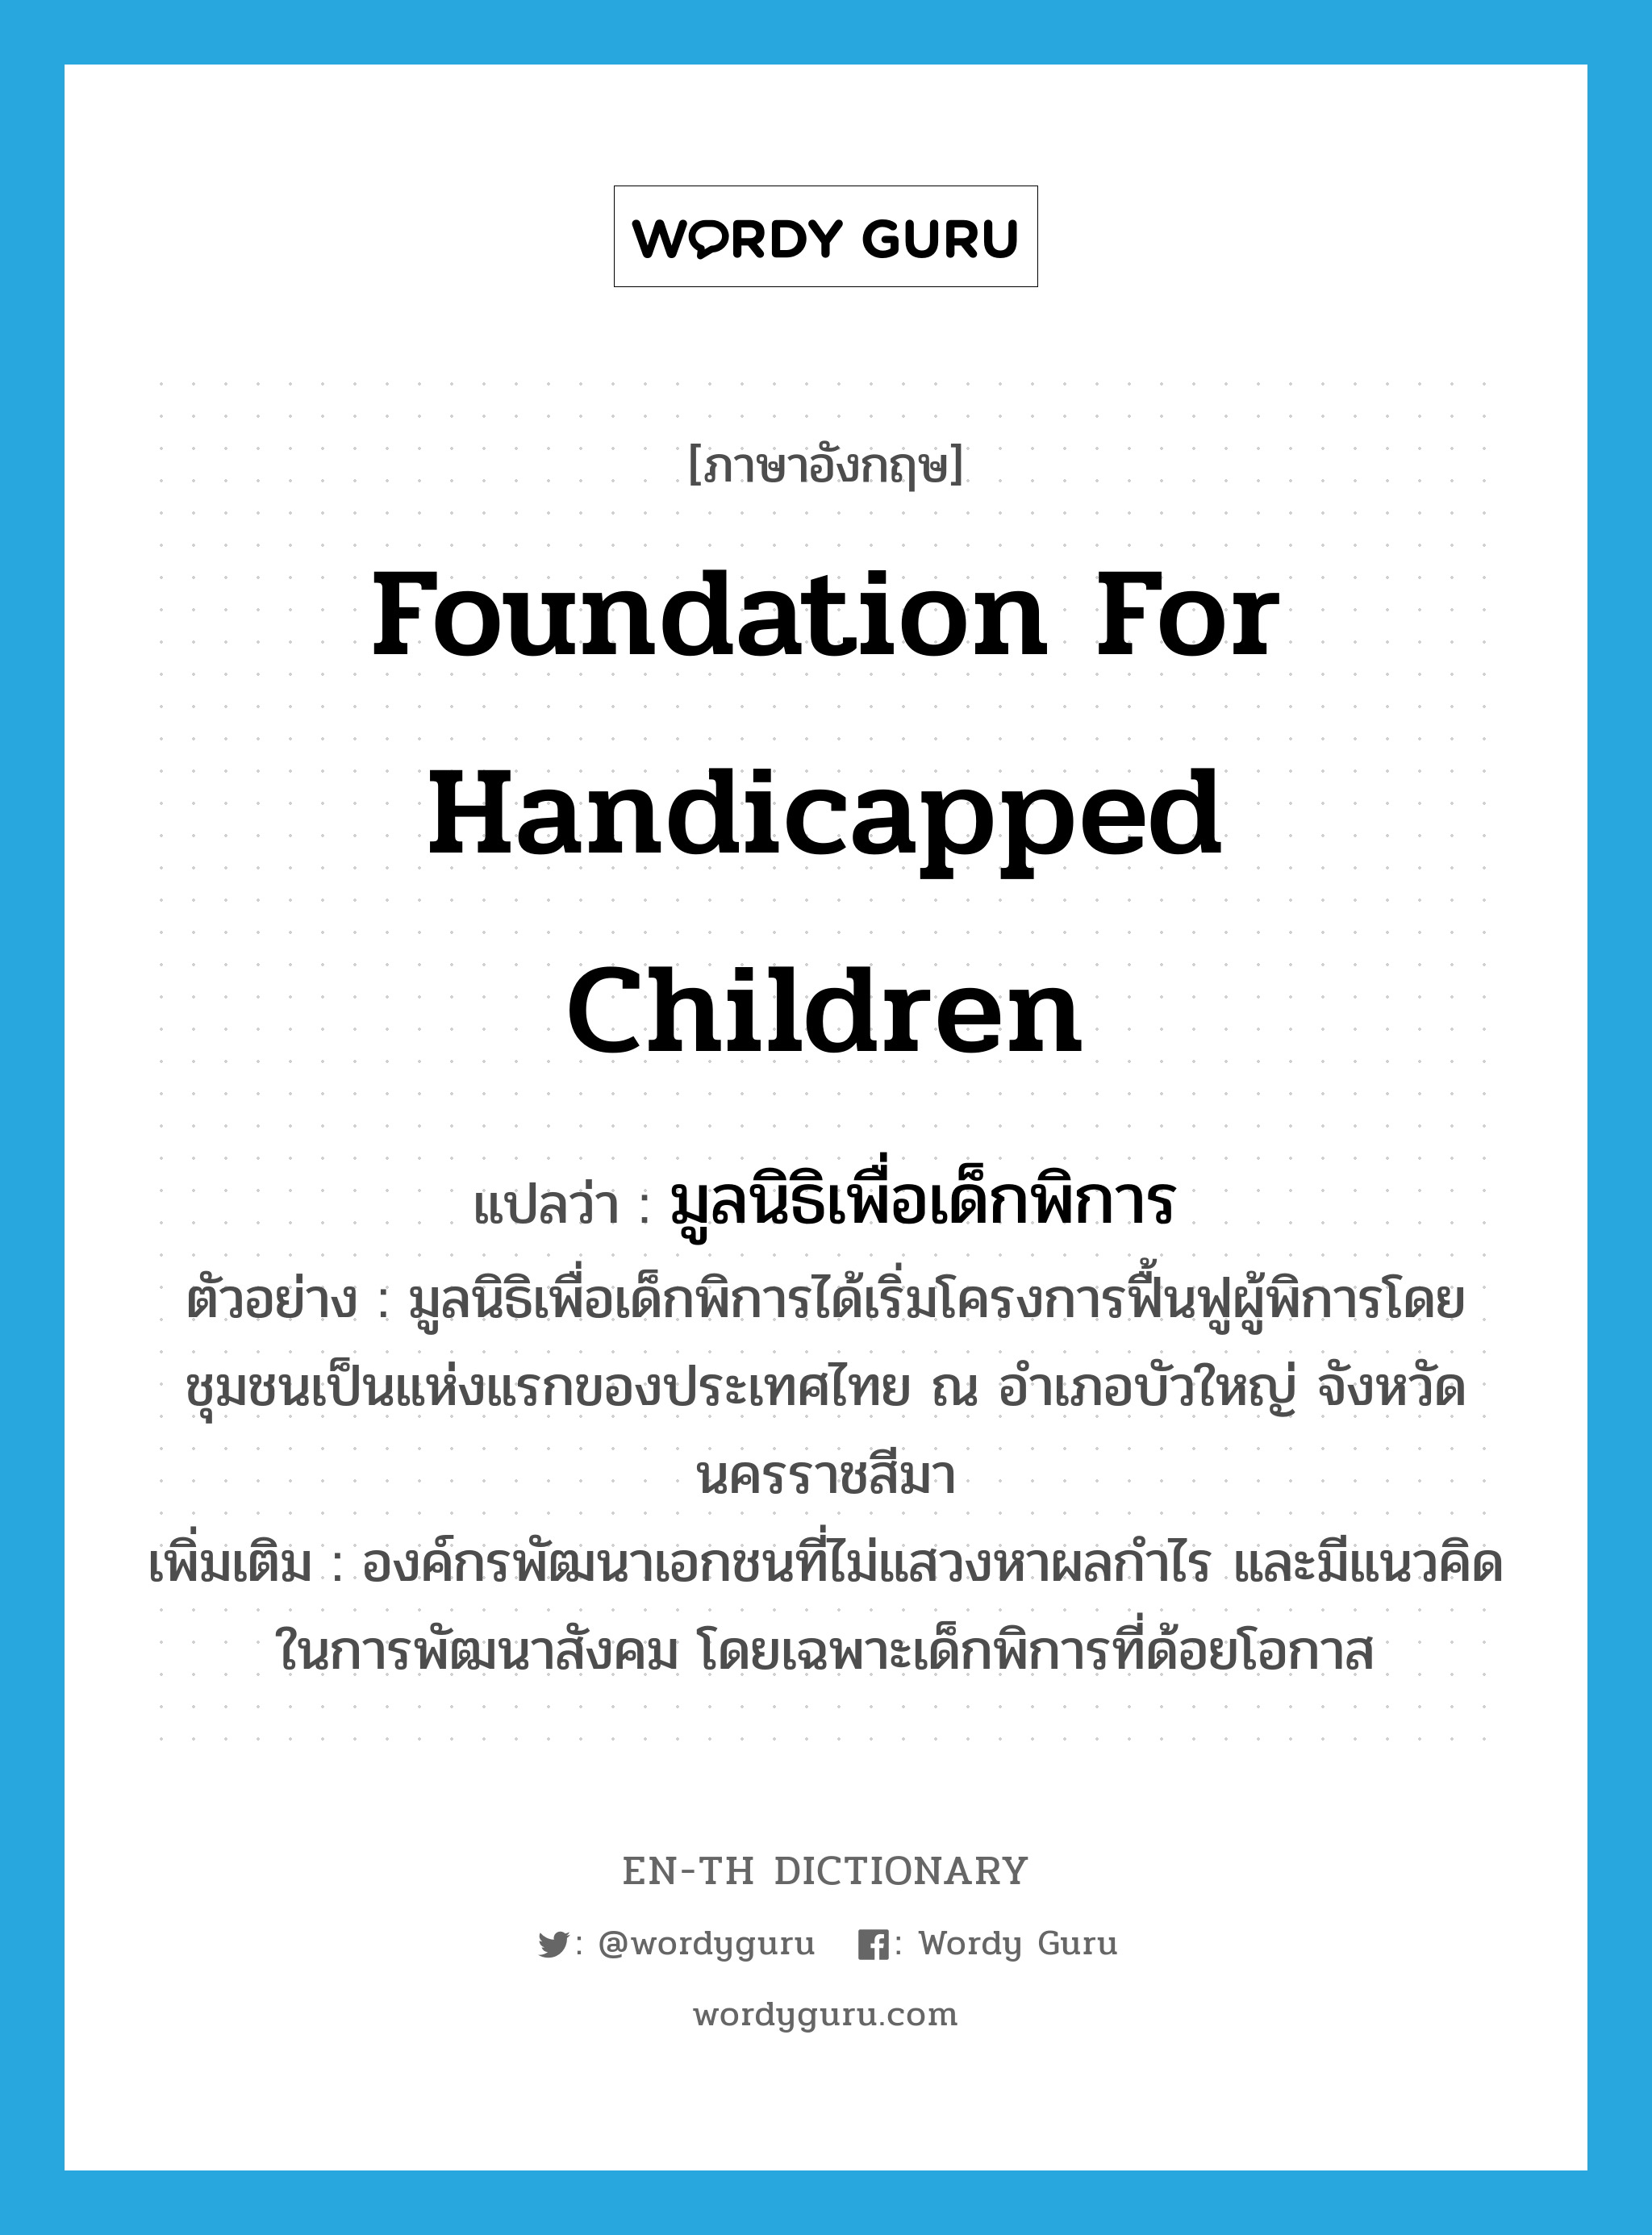 Foundation for Handicapped Children แปลว่า?, คำศัพท์ภาษาอังกฤษ Foundation for Handicapped Children แปลว่า มูลนิธิเพื่อเด็กพิการ ประเภท N ตัวอย่าง มูลนิธิเพื่อเด็กพิการได้เริ่มโครงการฟื้นฟูผู้พิการโดยชุมชนเป็นแห่งแรกของประเทศไทย ณ อำเภอบัวใหญ่ จังหวัดนครราชสีมา เพิ่มเติม องค์กรพัฒนาเอกชนที่ไม่แสวงหาผลกำไร และมีแนวคิดในการพัฒนาสังคม โดยเฉพาะเด็กพิการที่ด้อยโอกาส หมวด N